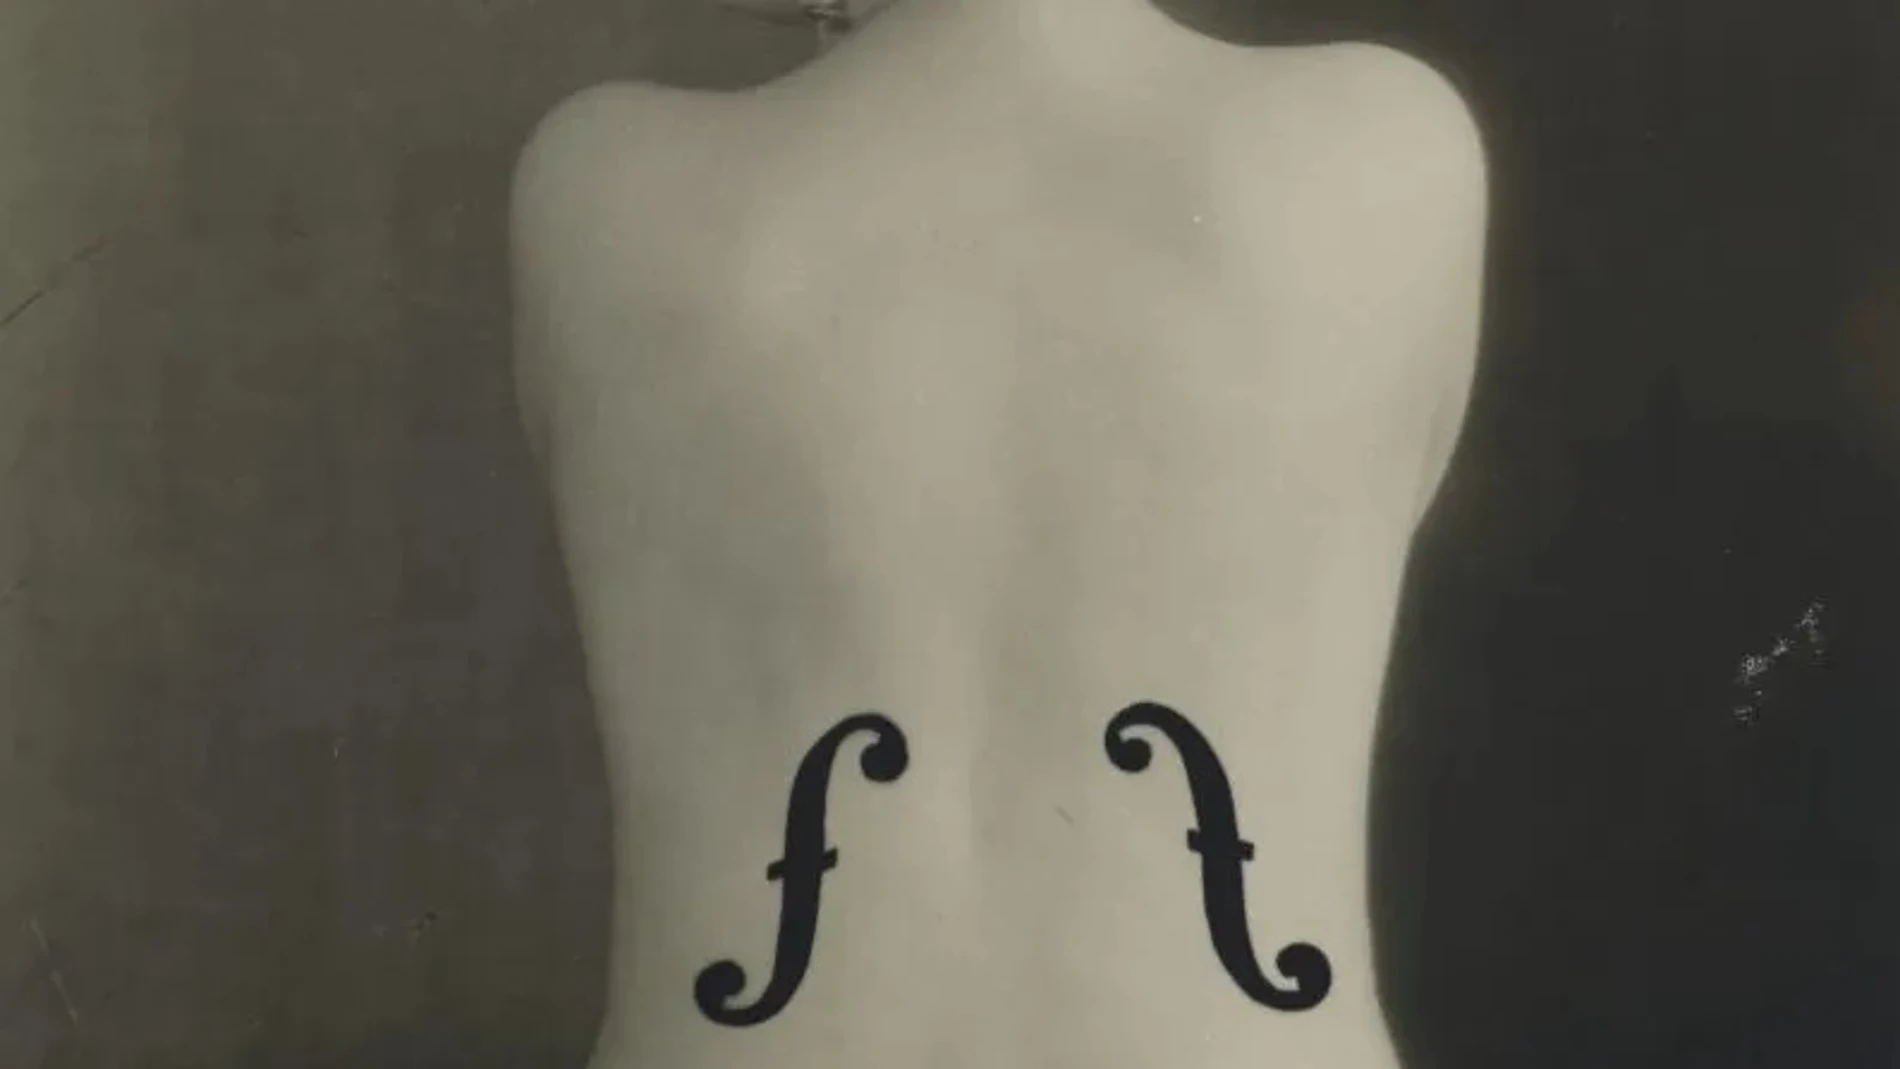 "Le violon d'Ingres", de Man Ray